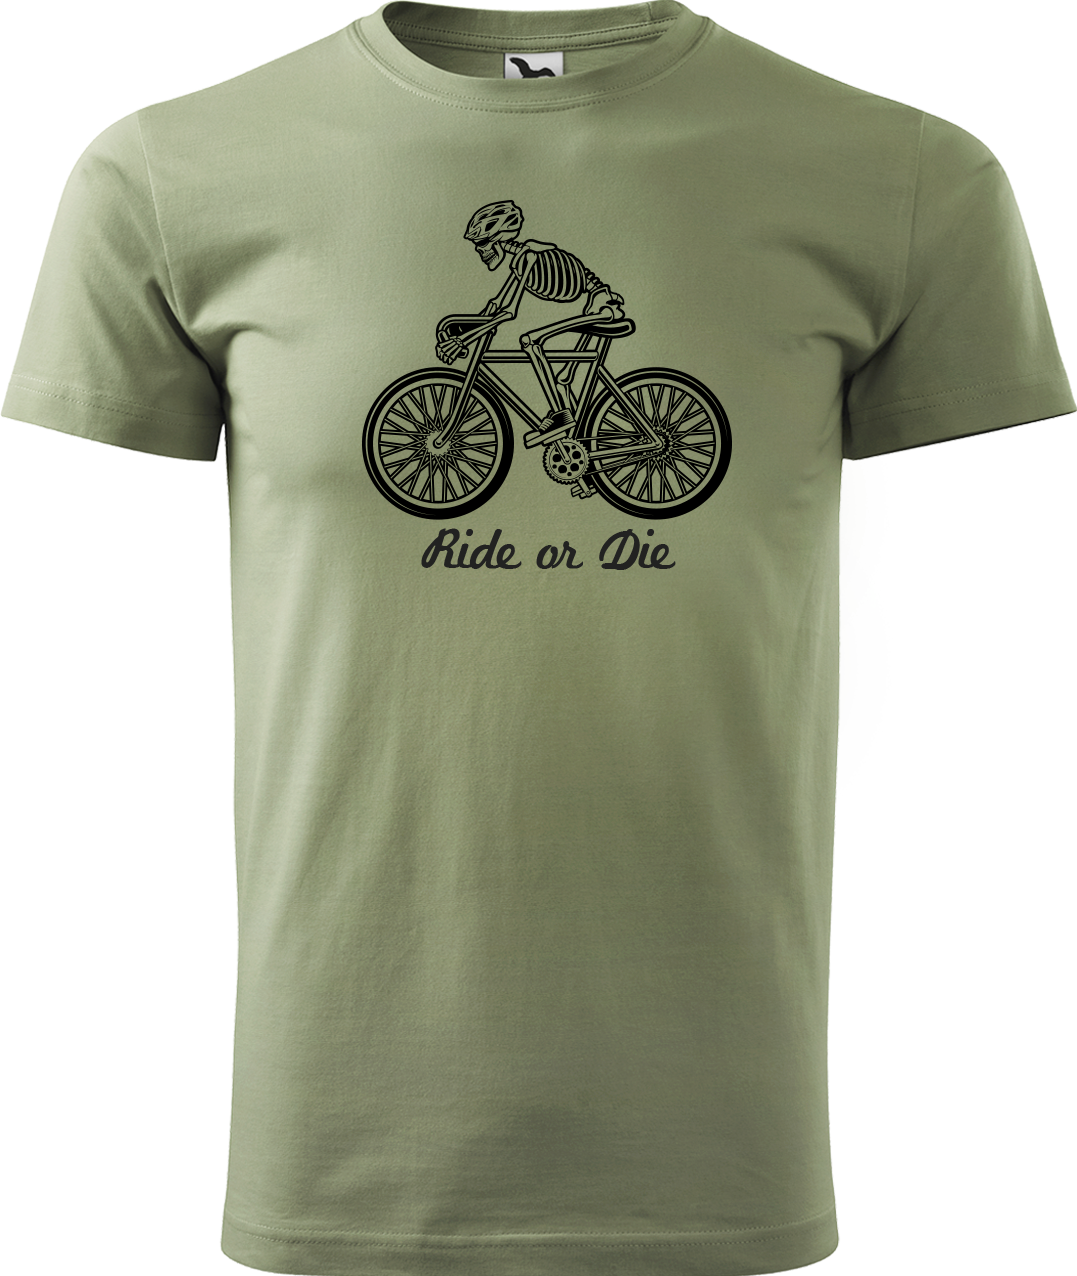 Pánské tričko pro cyklistu - Ride or Die Velikost: M, Barva: Světlá khaki (28)